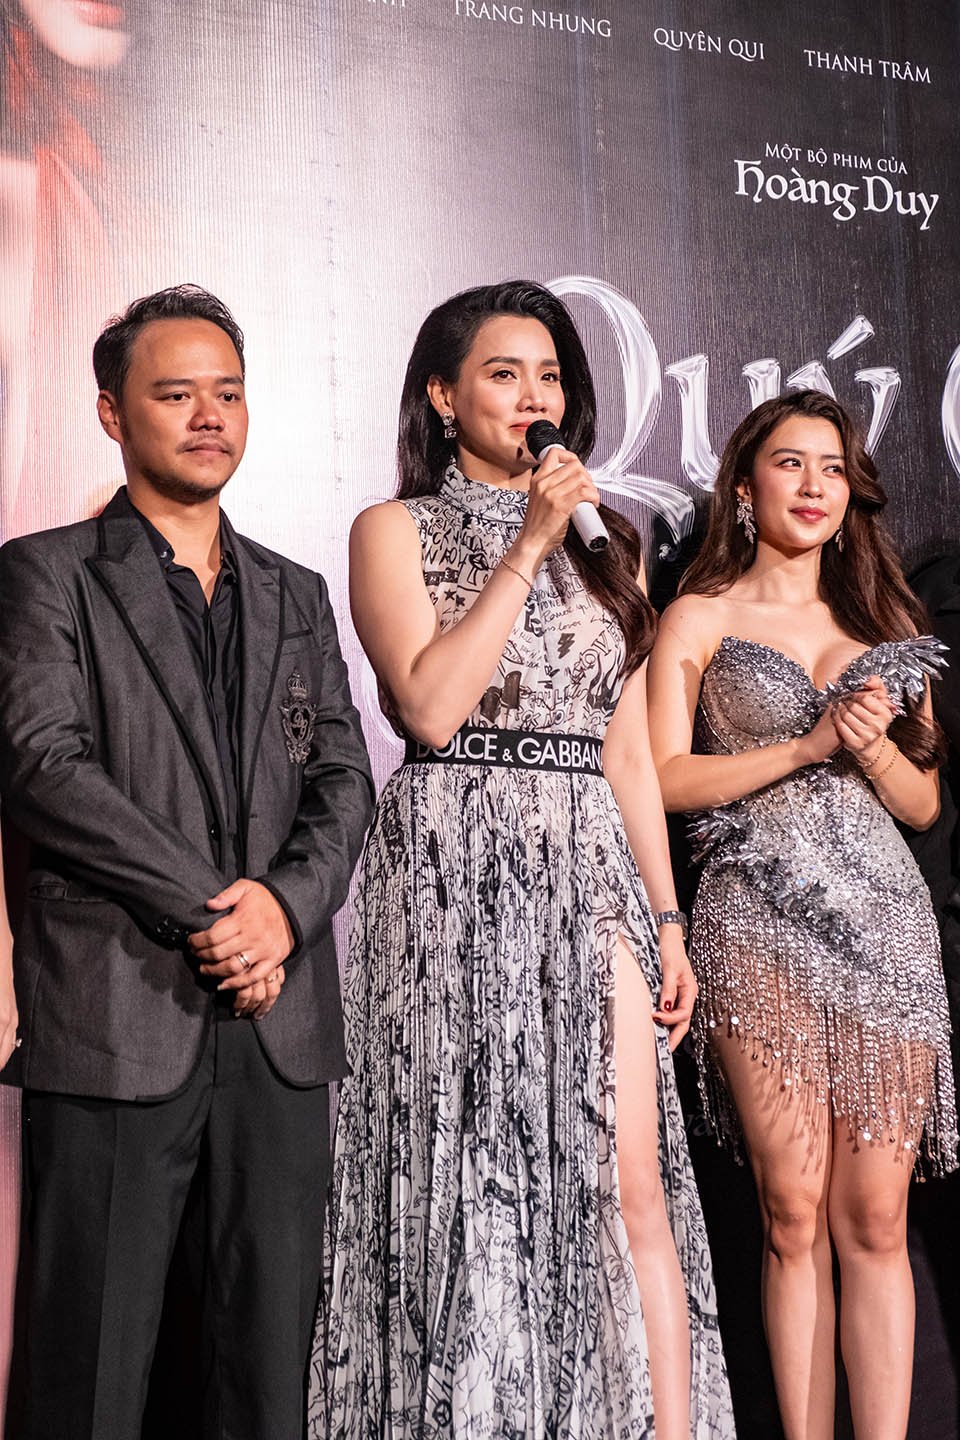 Đạo diễn&nbsp;Nguyễn Hoàng Duy và vợ Trang Nhung chia sẻ trong buổi ra mắt&nbsp;“Quý cô thừa kế 2” tại TP.HCM.